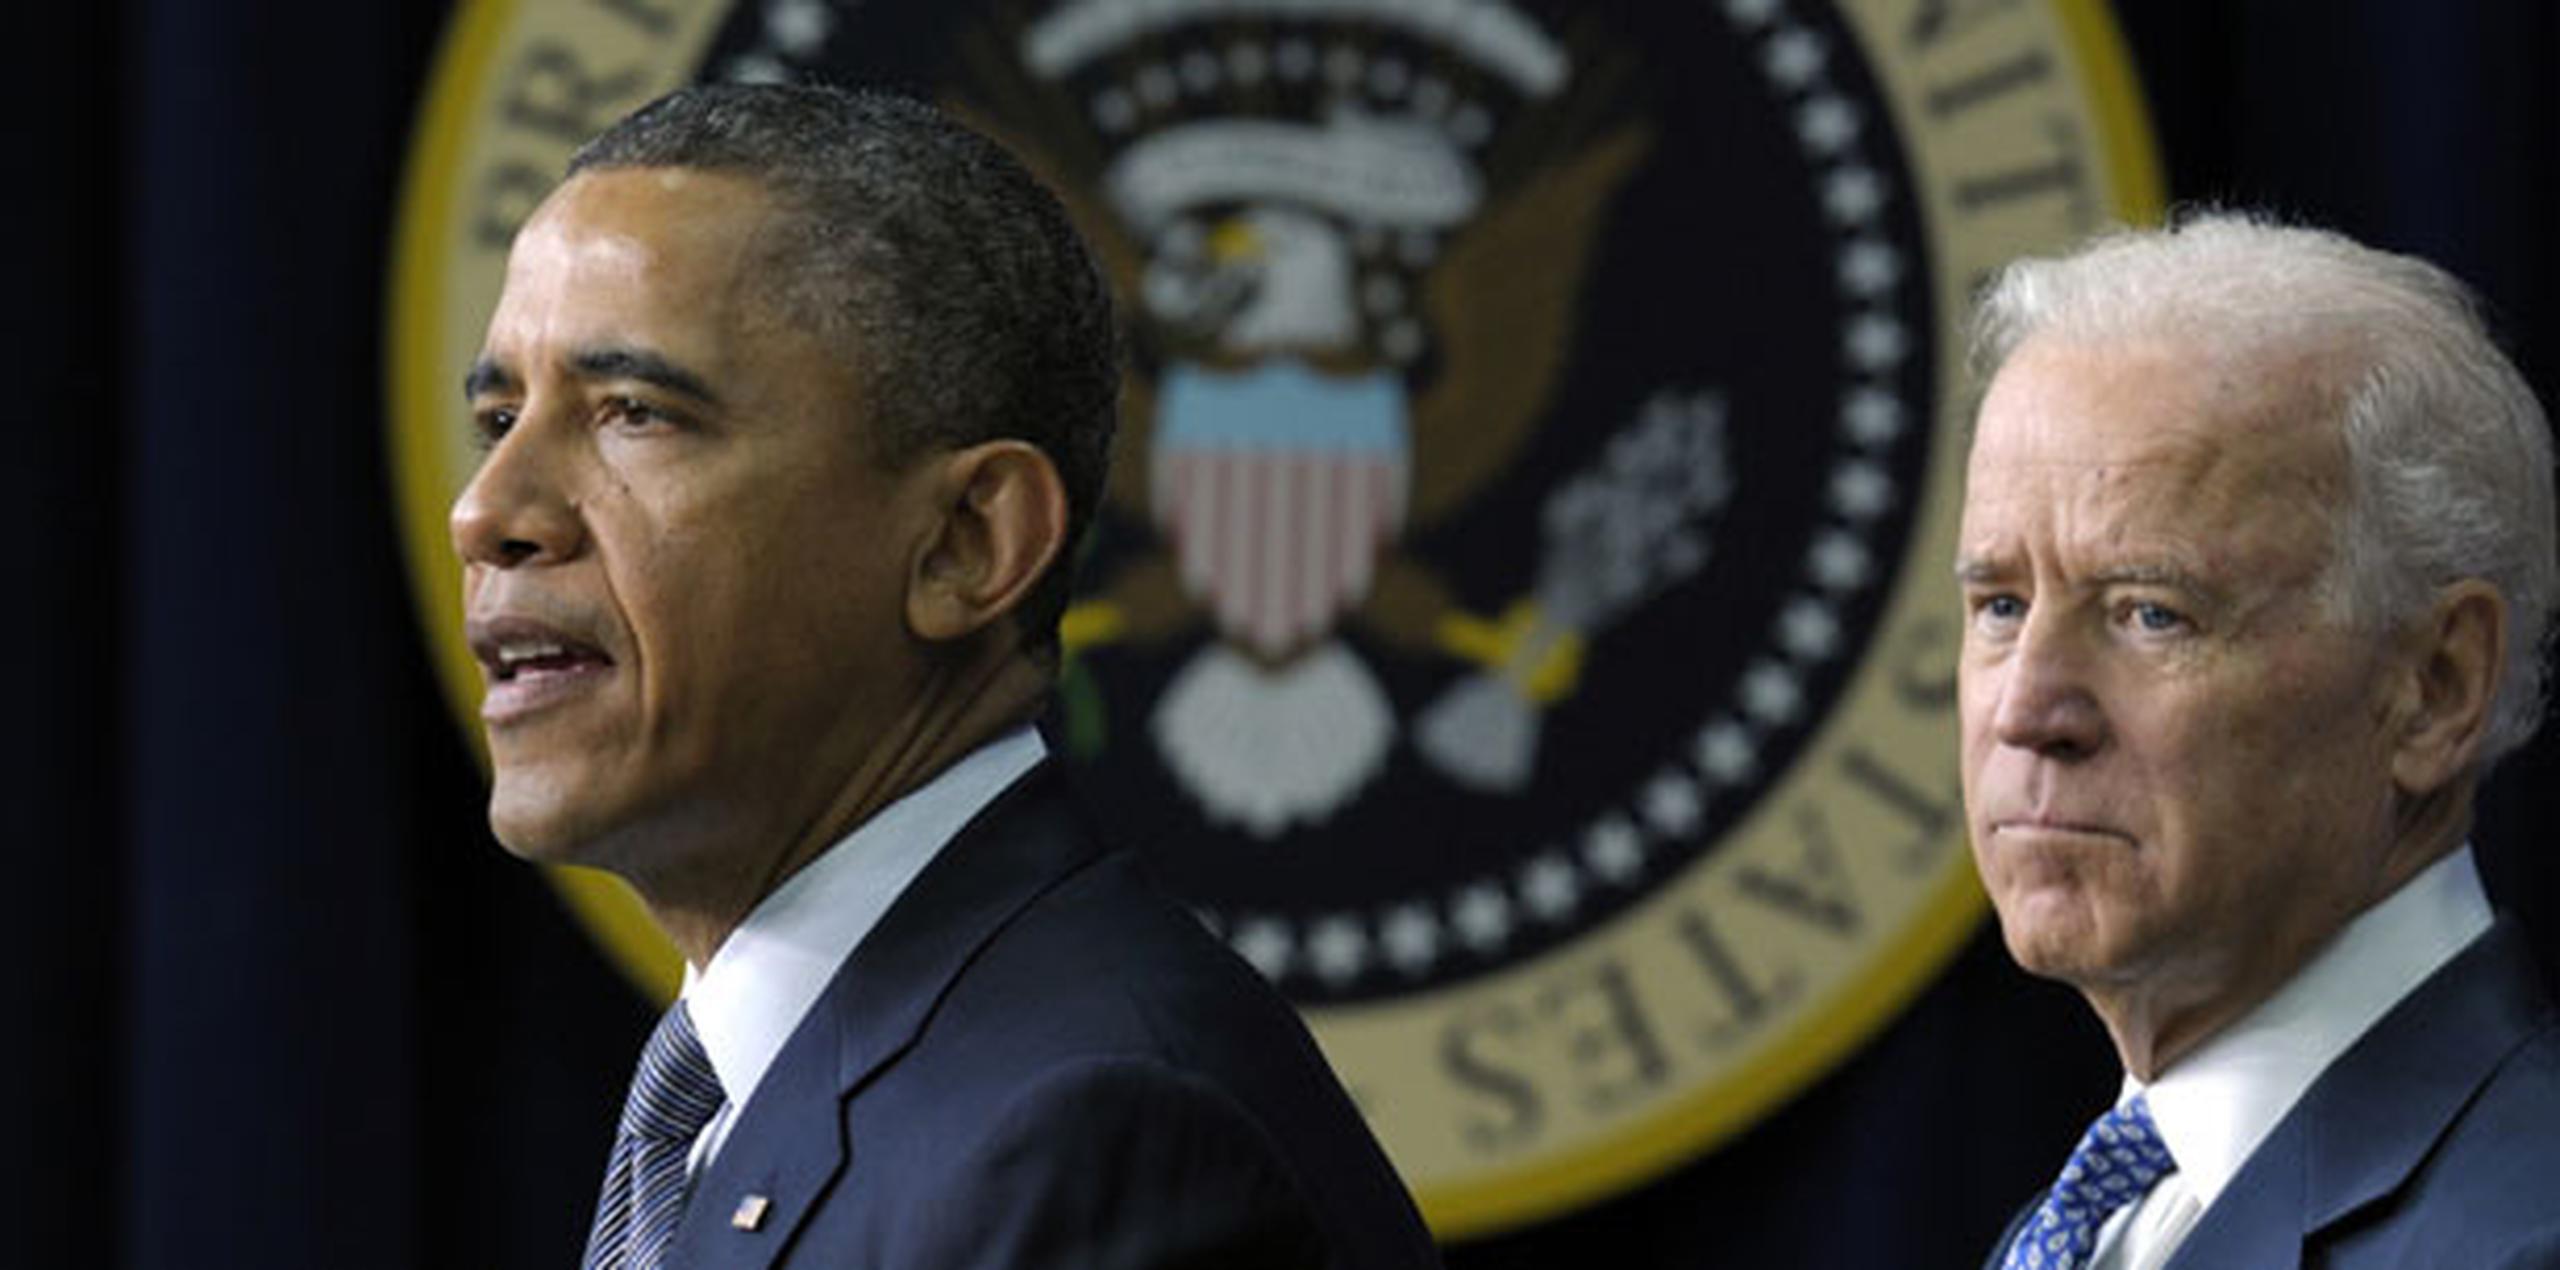 Obama tiene previsto invocar el recuerdo de los 26 alumnos y personal asesinado en la escuela. (AP)